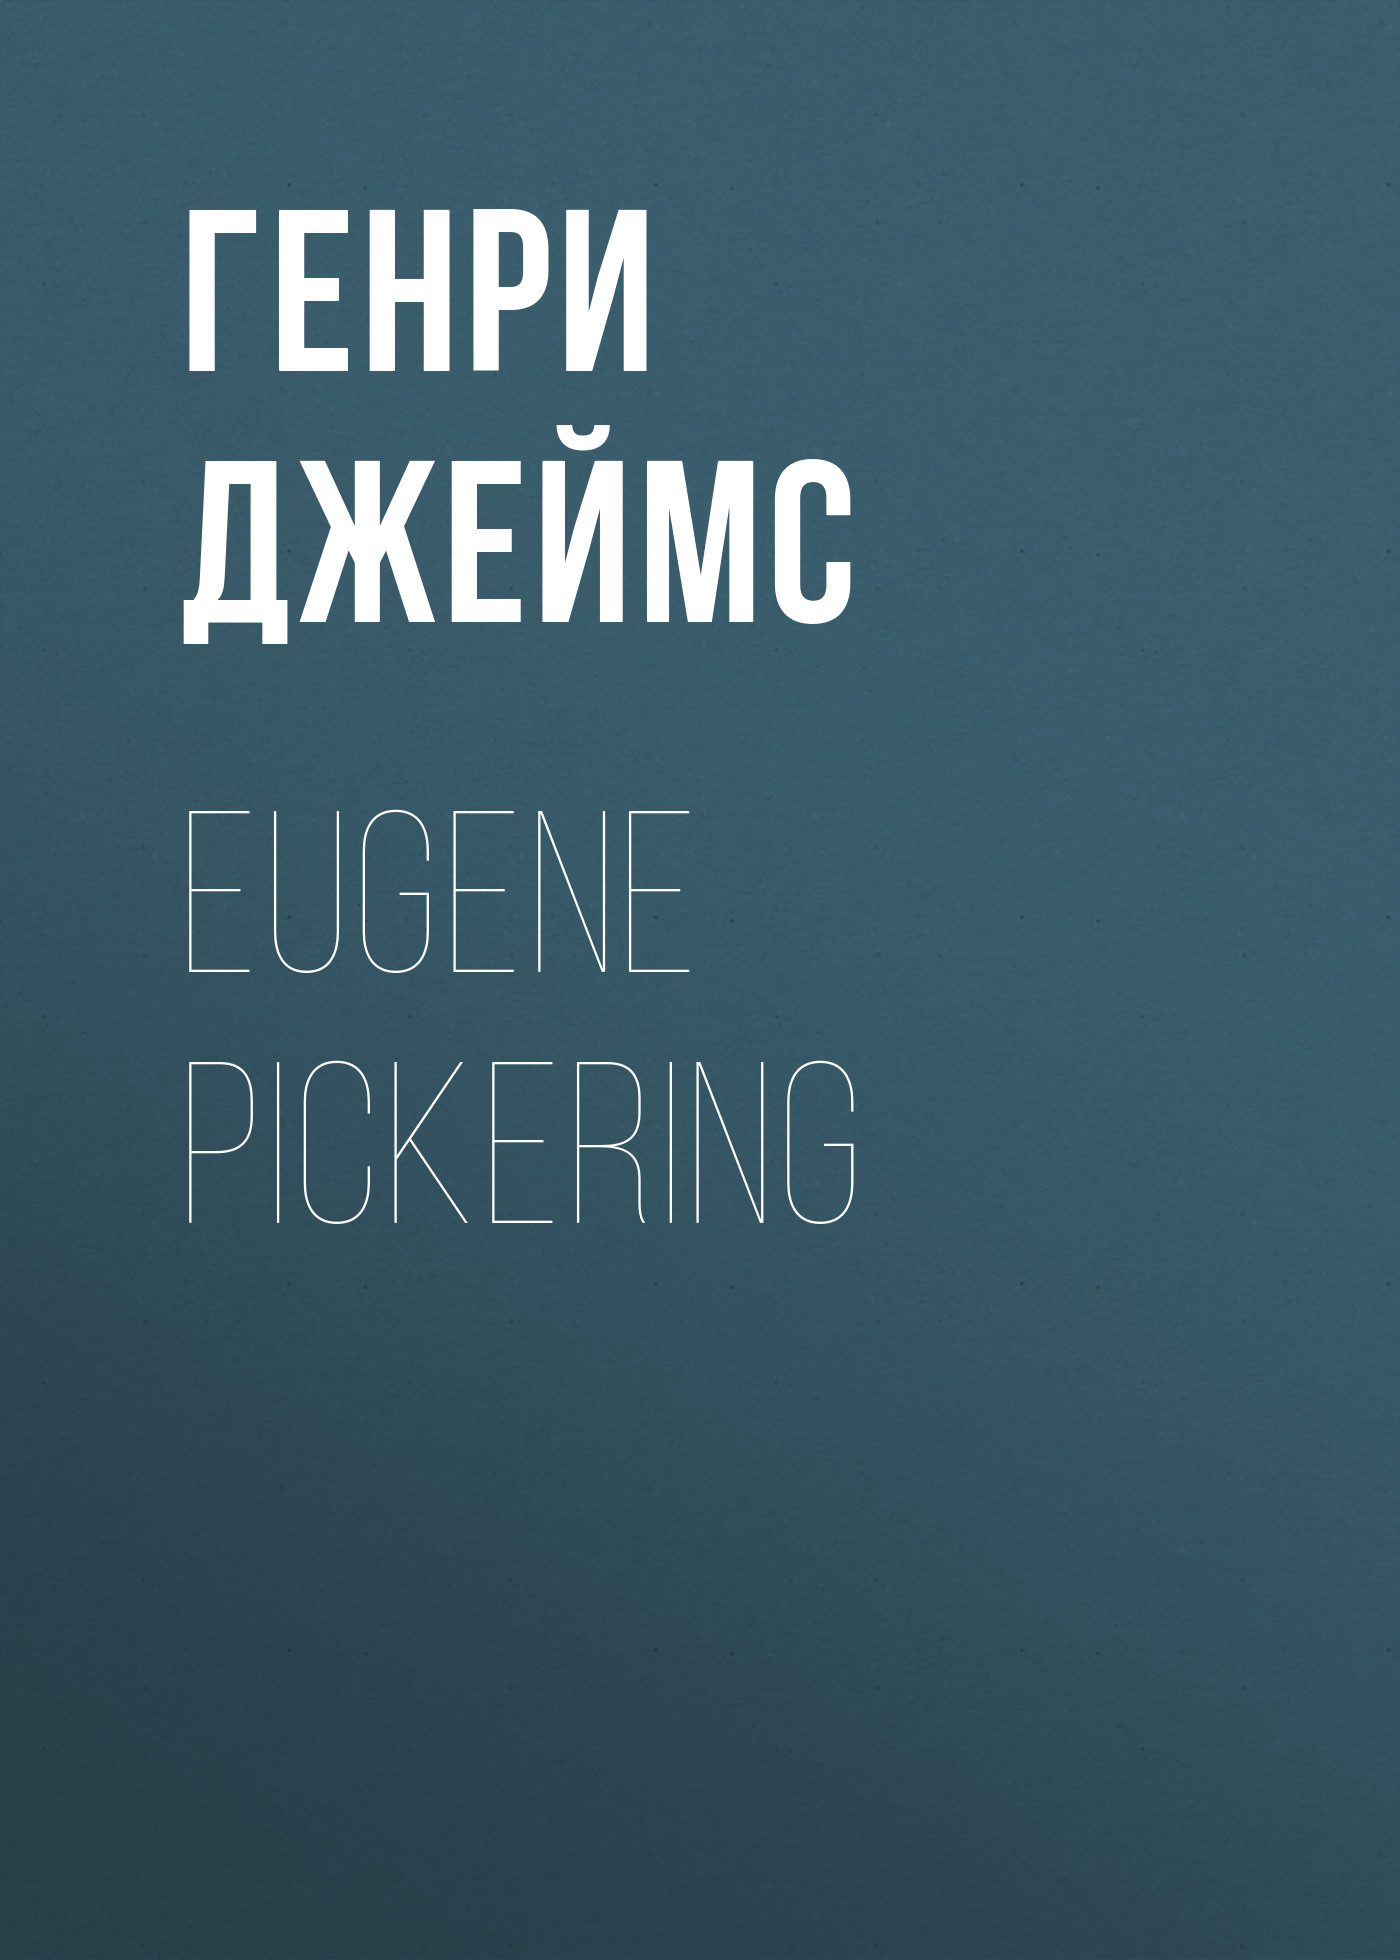 Книга Eugene Pickering из серии , созданная Генри Джеймс, может относится к жанру Зарубежная классика, Зарубежная старинная литература. Стоимость электронной книги Eugene Pickering с идентификатором 34842294 составляет 0 руб.